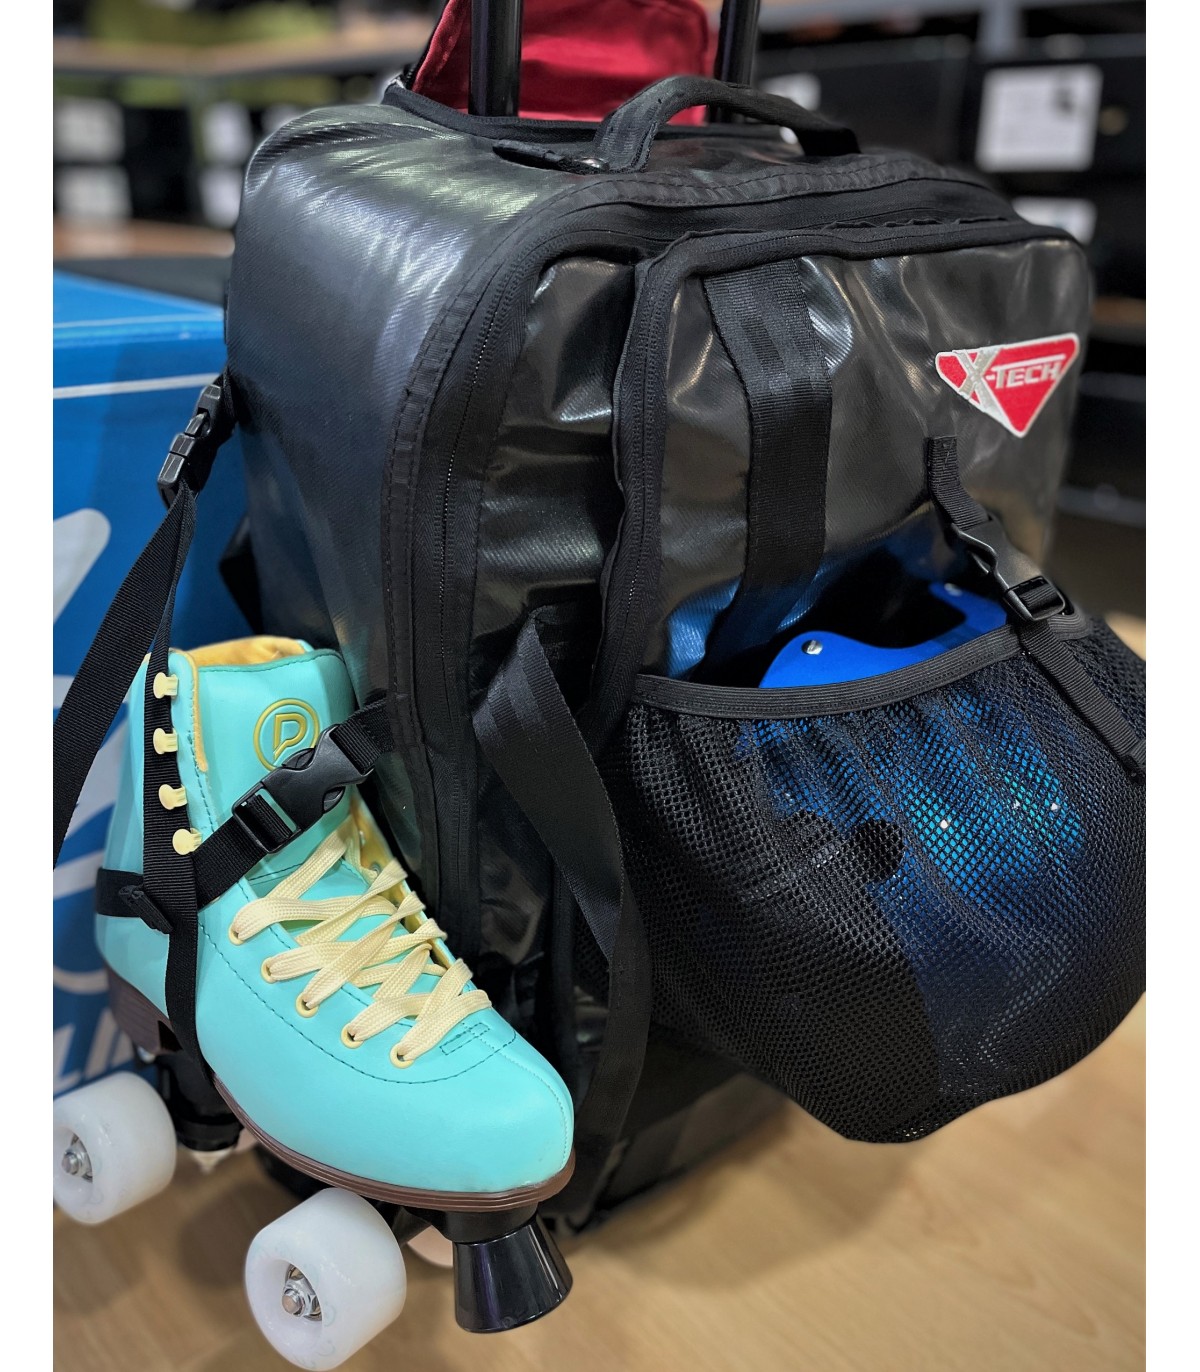 Así son las mochilas especiales para patines